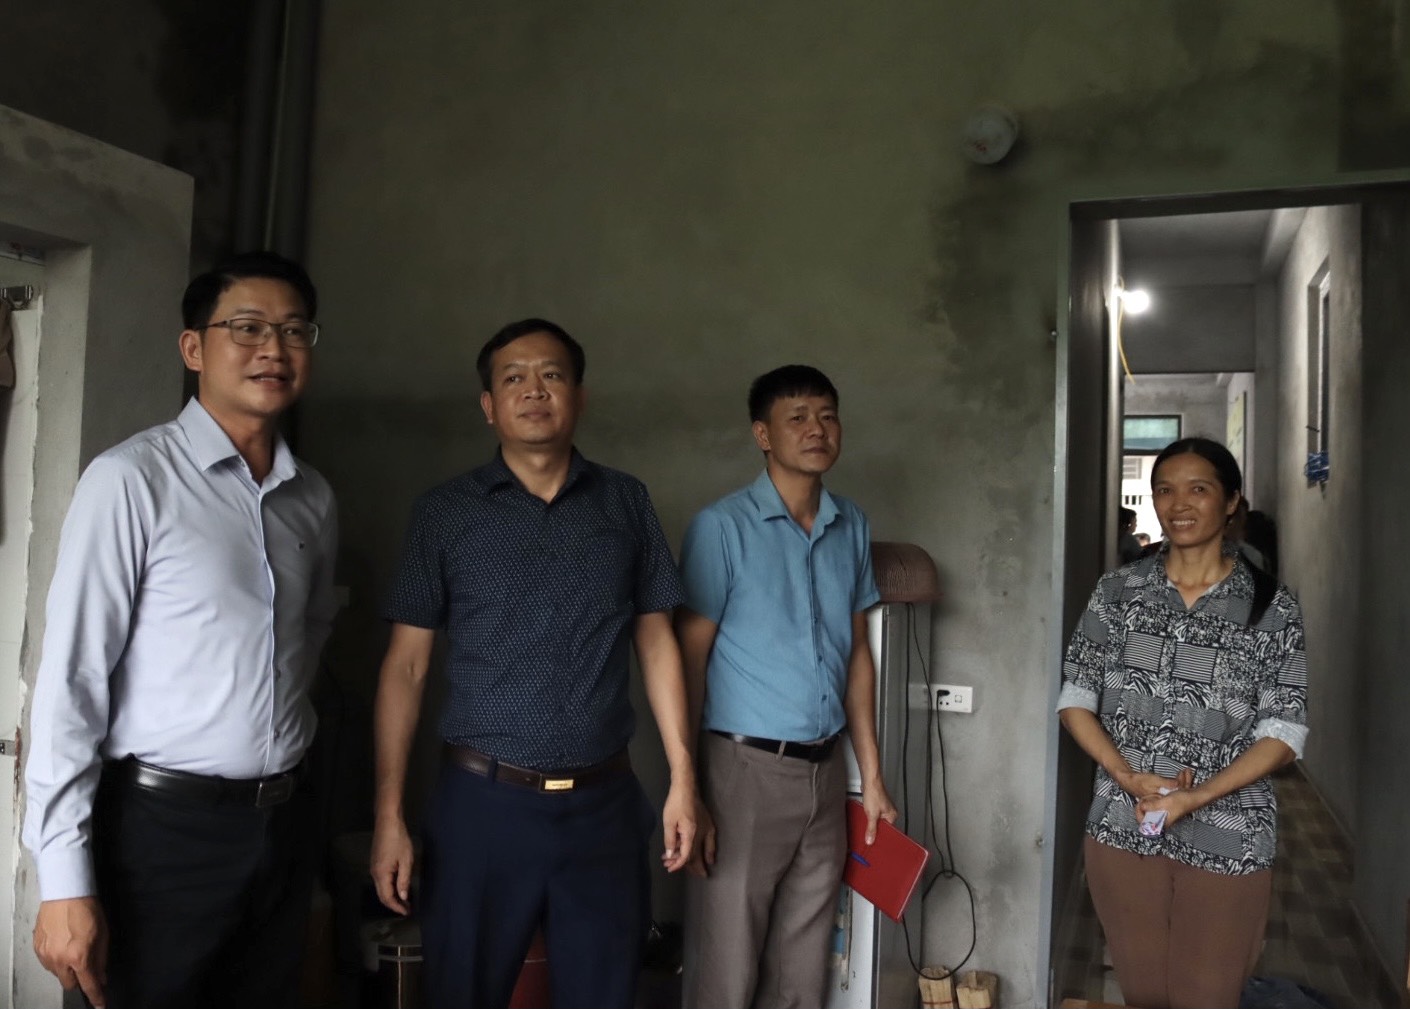 Lãnh đạo Uỷ ban MTTQ Việt Nam quận Tây Hồ và Thị trấn Vân Đình tham quan ngôi nhà đại đoàn kết của gia đình chị Nguyễn Thị Tuyến.